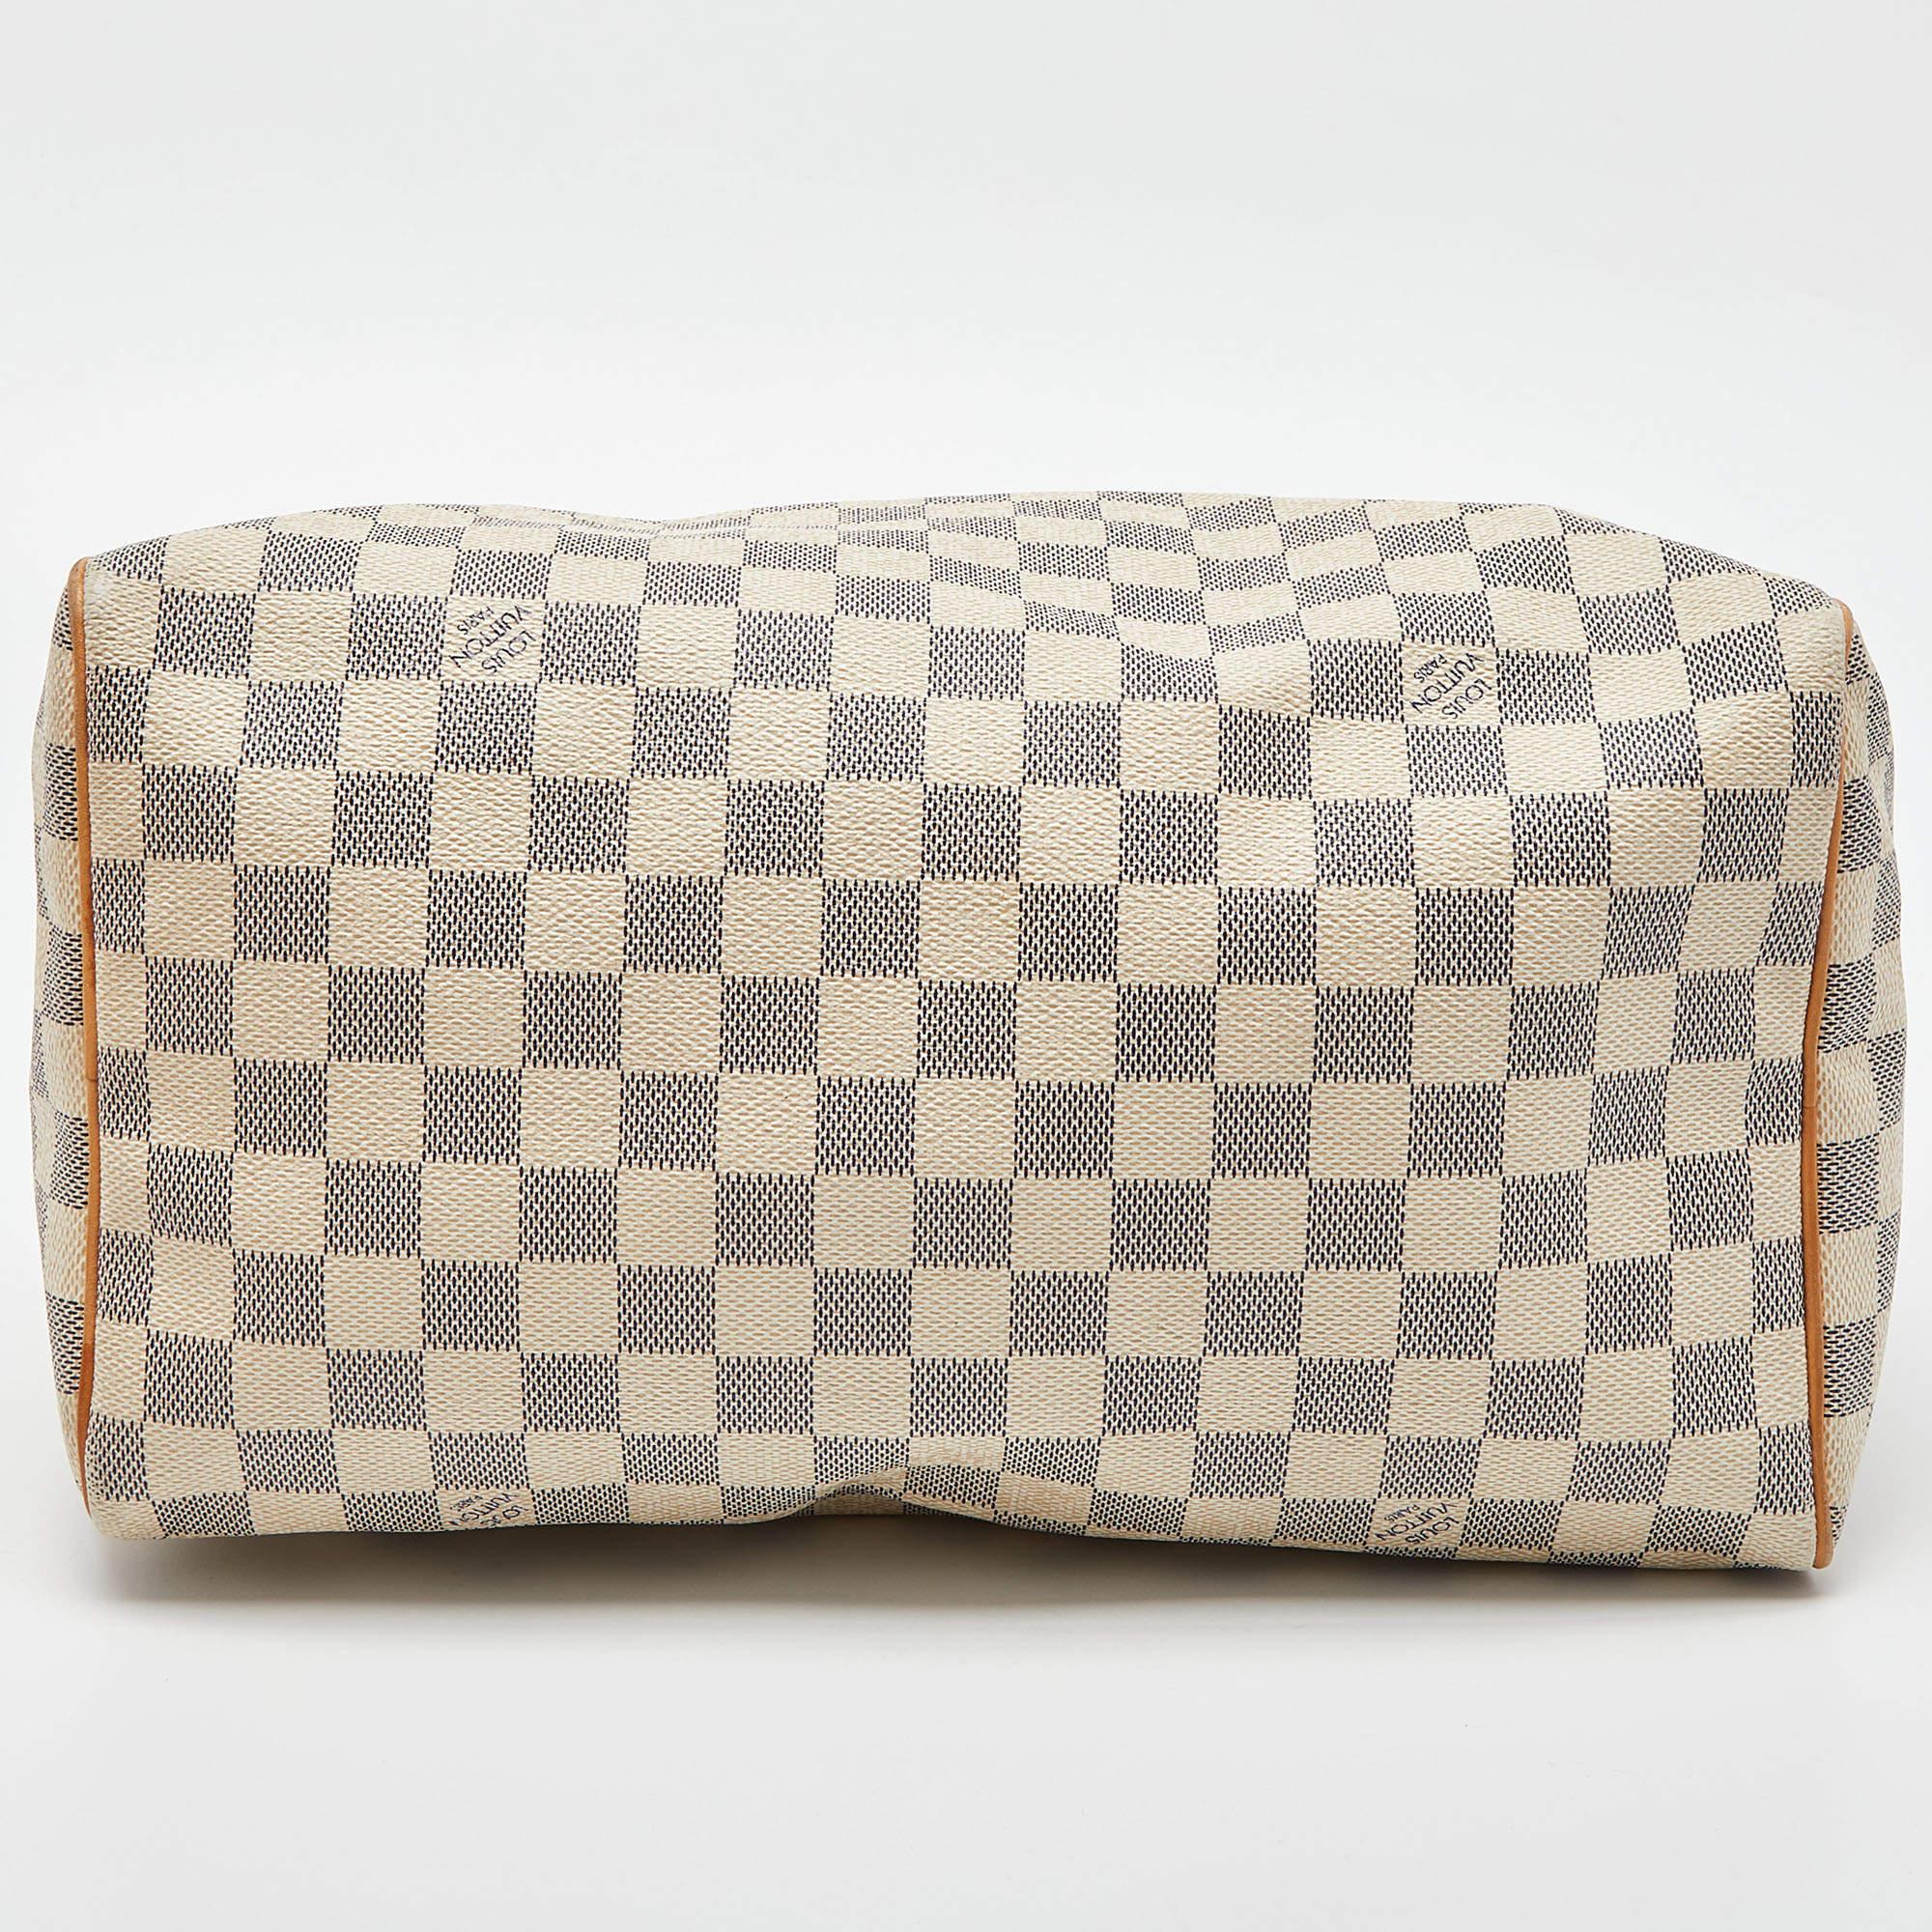 Damier Azur Speedy 30 Tasche aus Segeltuch von Louis Vuitton Damen